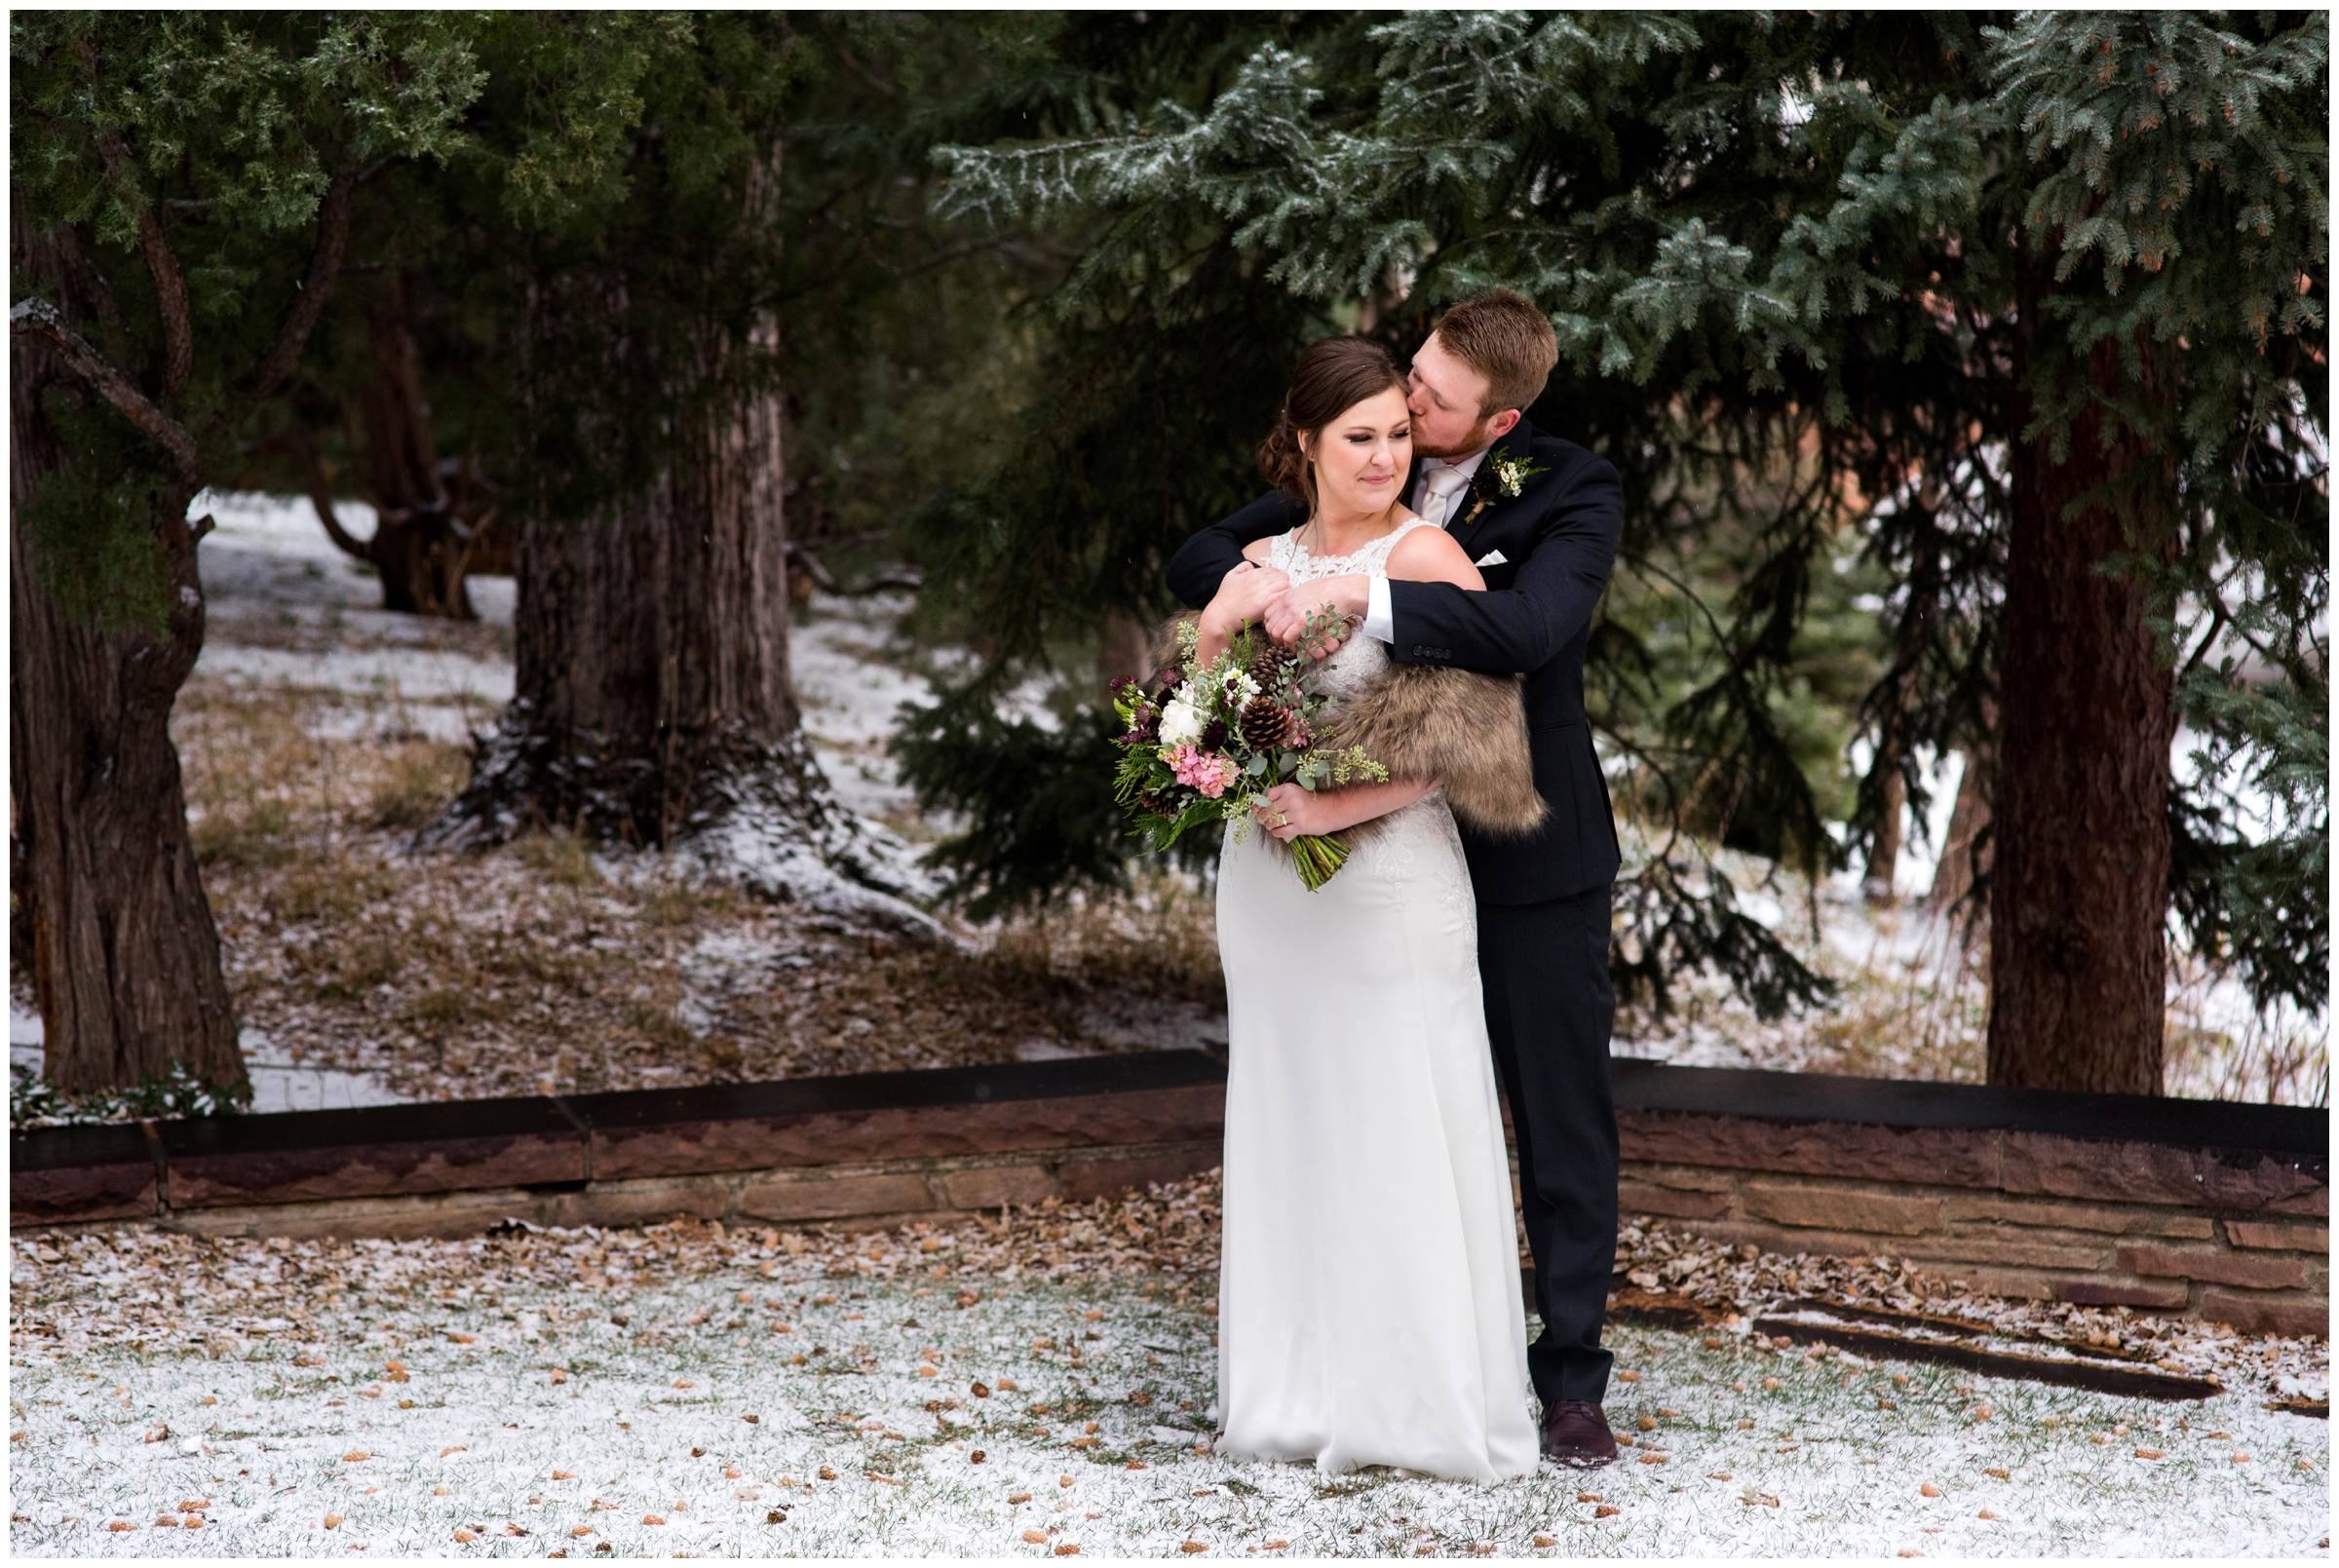 couple snuggling in snow during Colorado winter wedding photos 